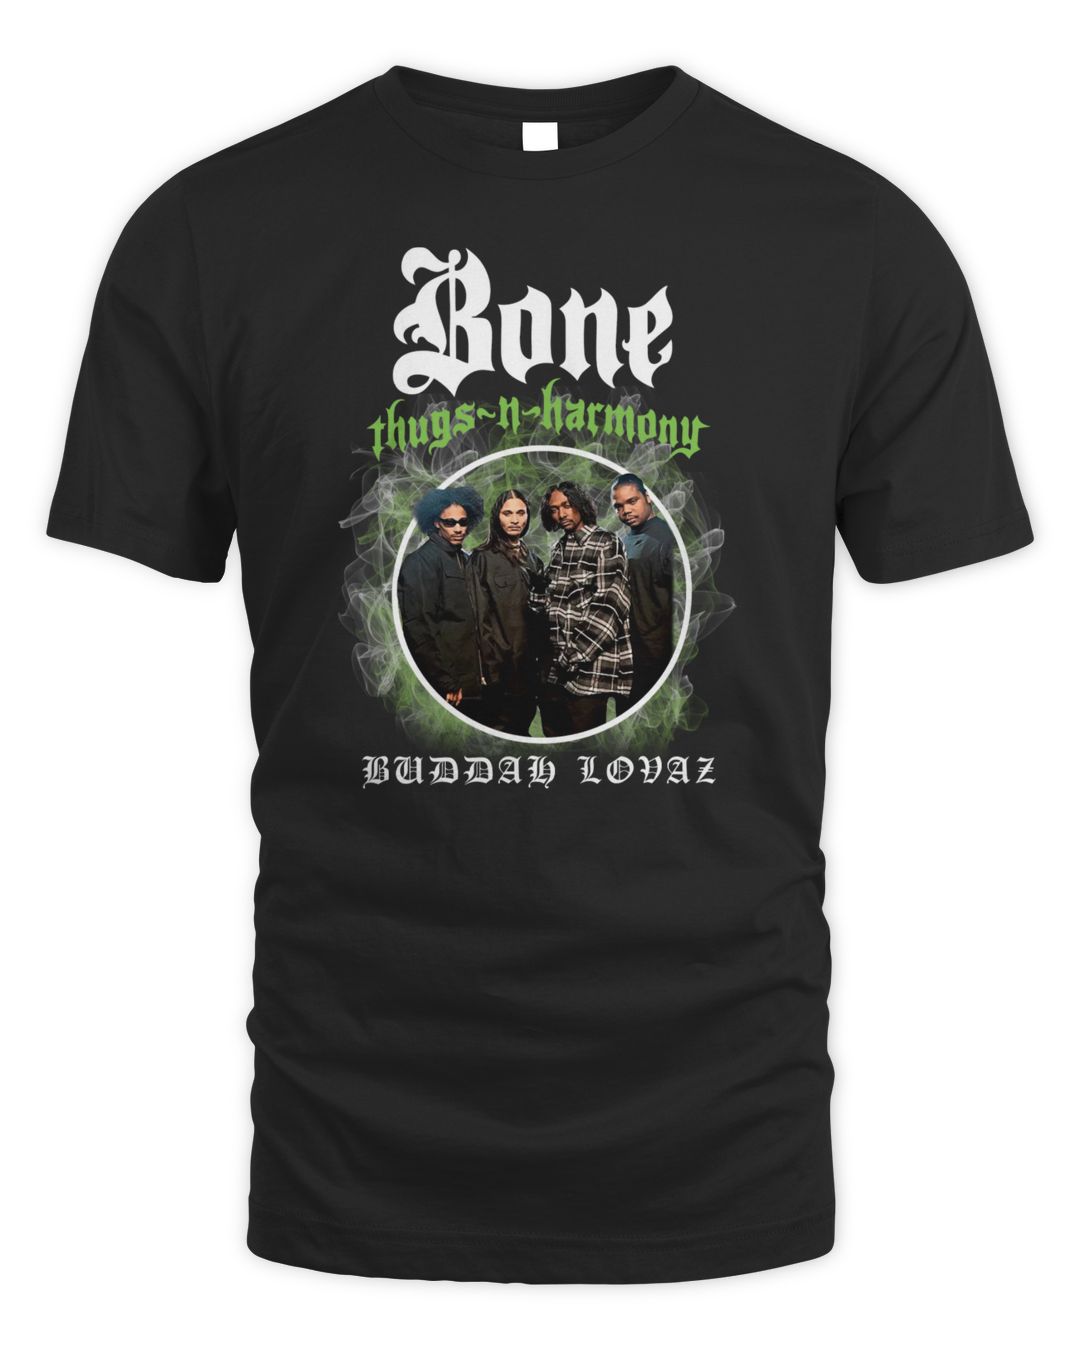 Bone Thugs N Harmony Merch Buddah Lovaz Shirt